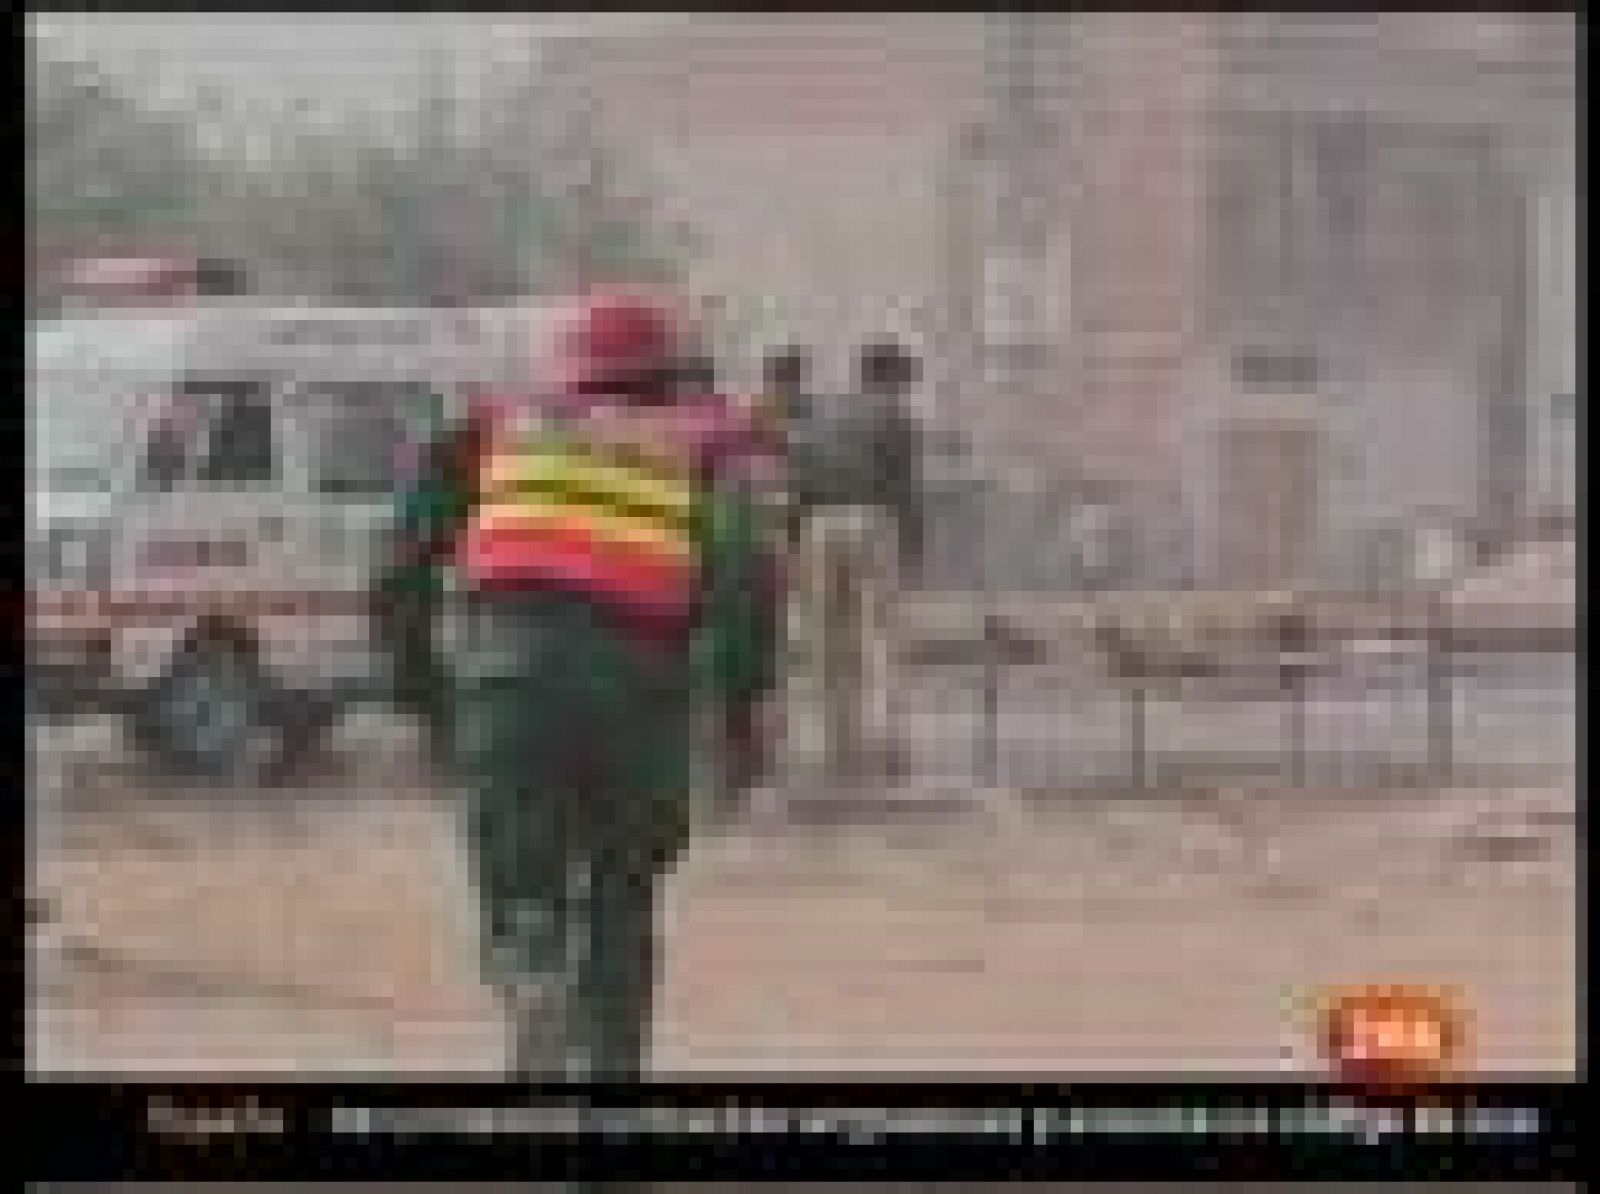 Al menos 39 personas han muerto en un ataque terrorista mAl menos 39 personas han muerto en un ataque terrorista múltiple talibán en Pakistán contra tres comisarías de Policía en Lahore, al este del país, y en un atentado suicida contra un coche en el noroeste, según ha informado la Policía